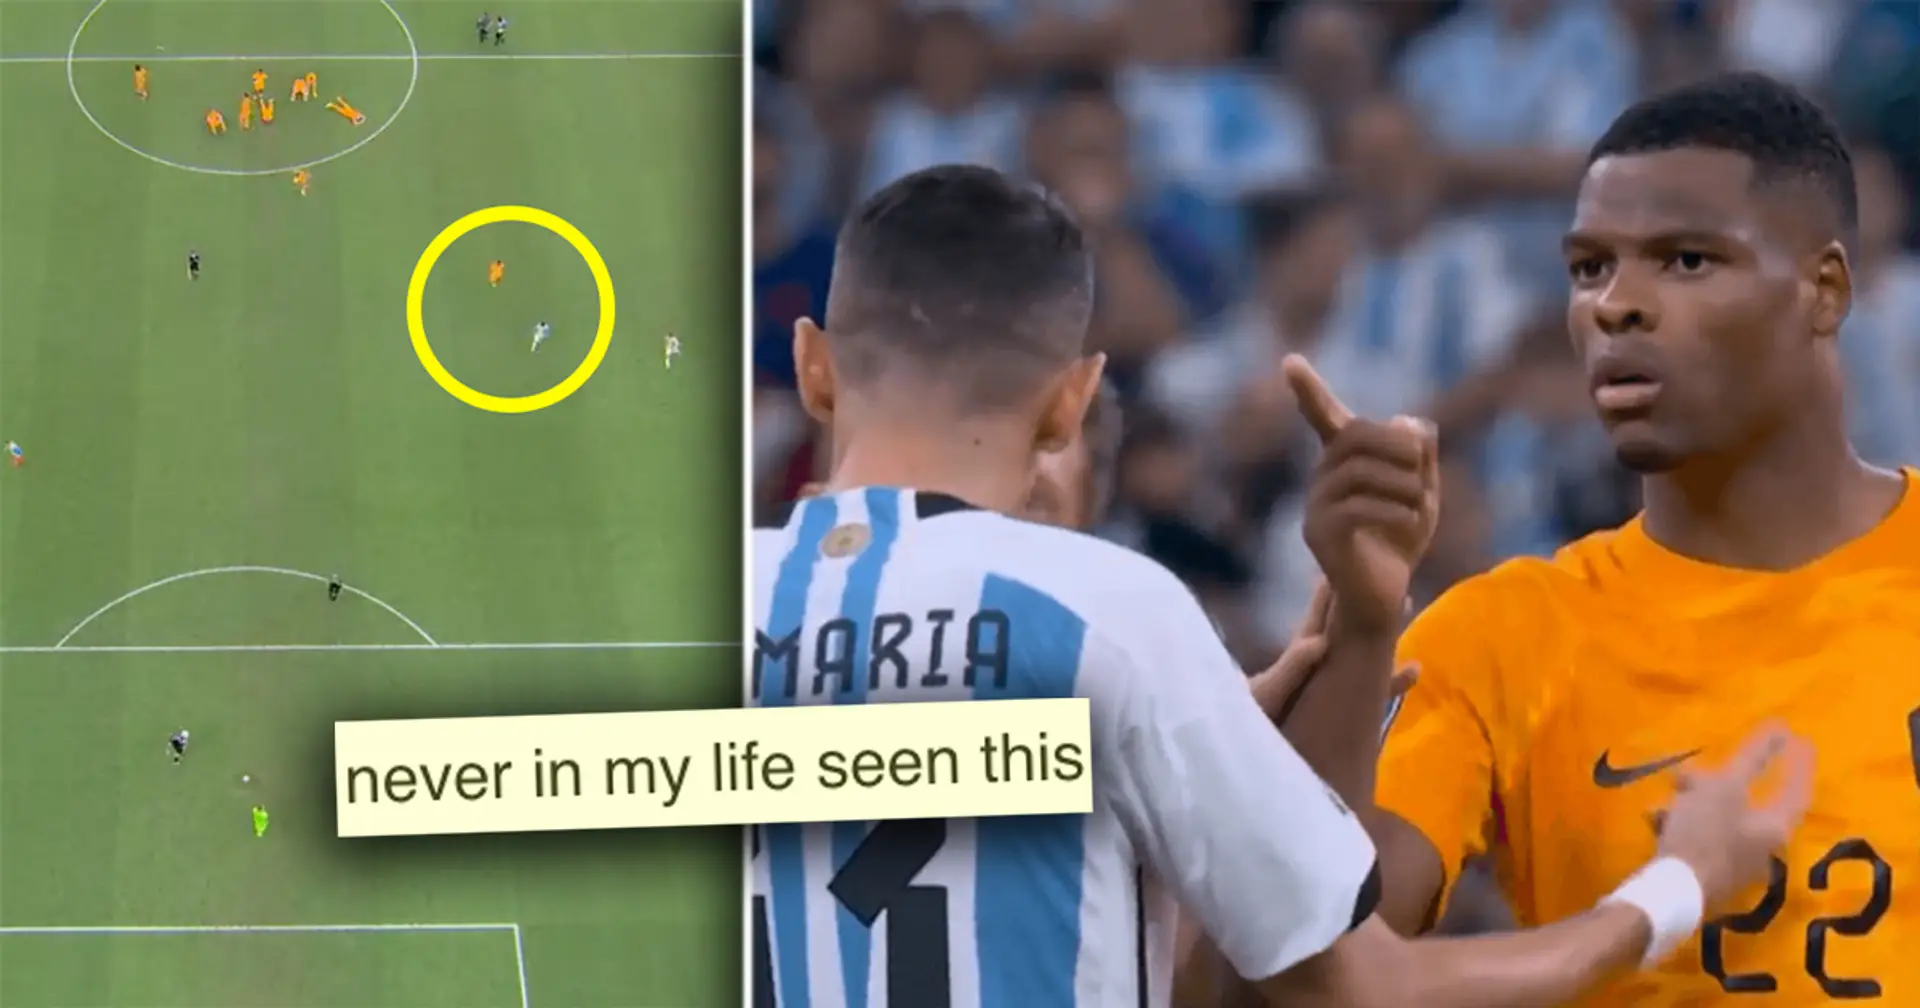 "Schaut euch diese kleine Sch****e an": Ein niederländischer Spieler wurde gesehen, wie er Argentinien im Elfmeterschießen provozierte